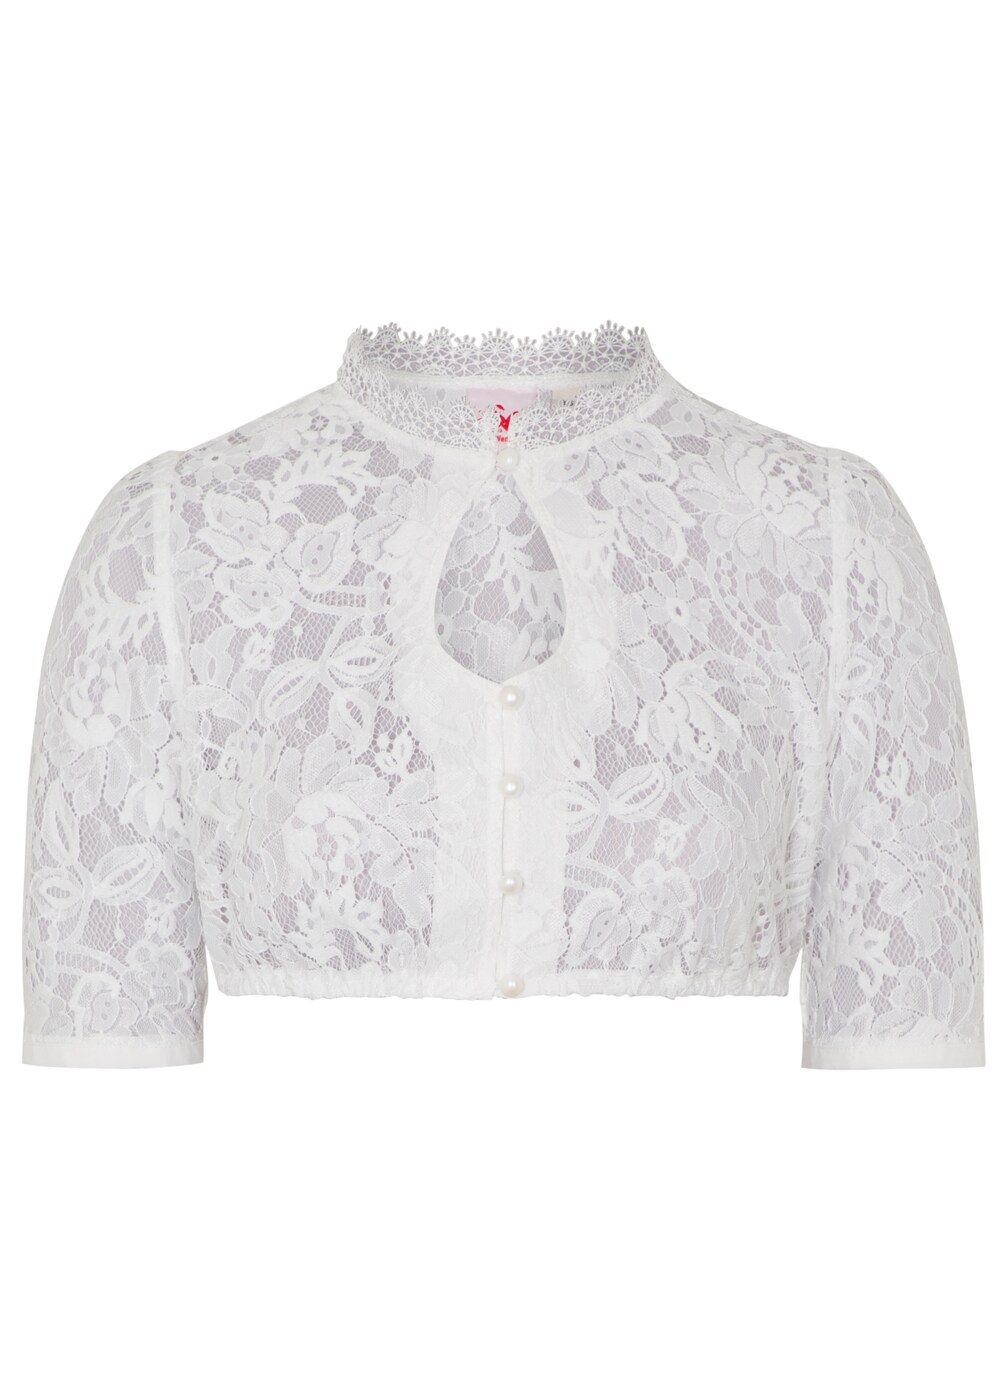 Традиционная блузка Spieth & Wensky Wachsflower, белый